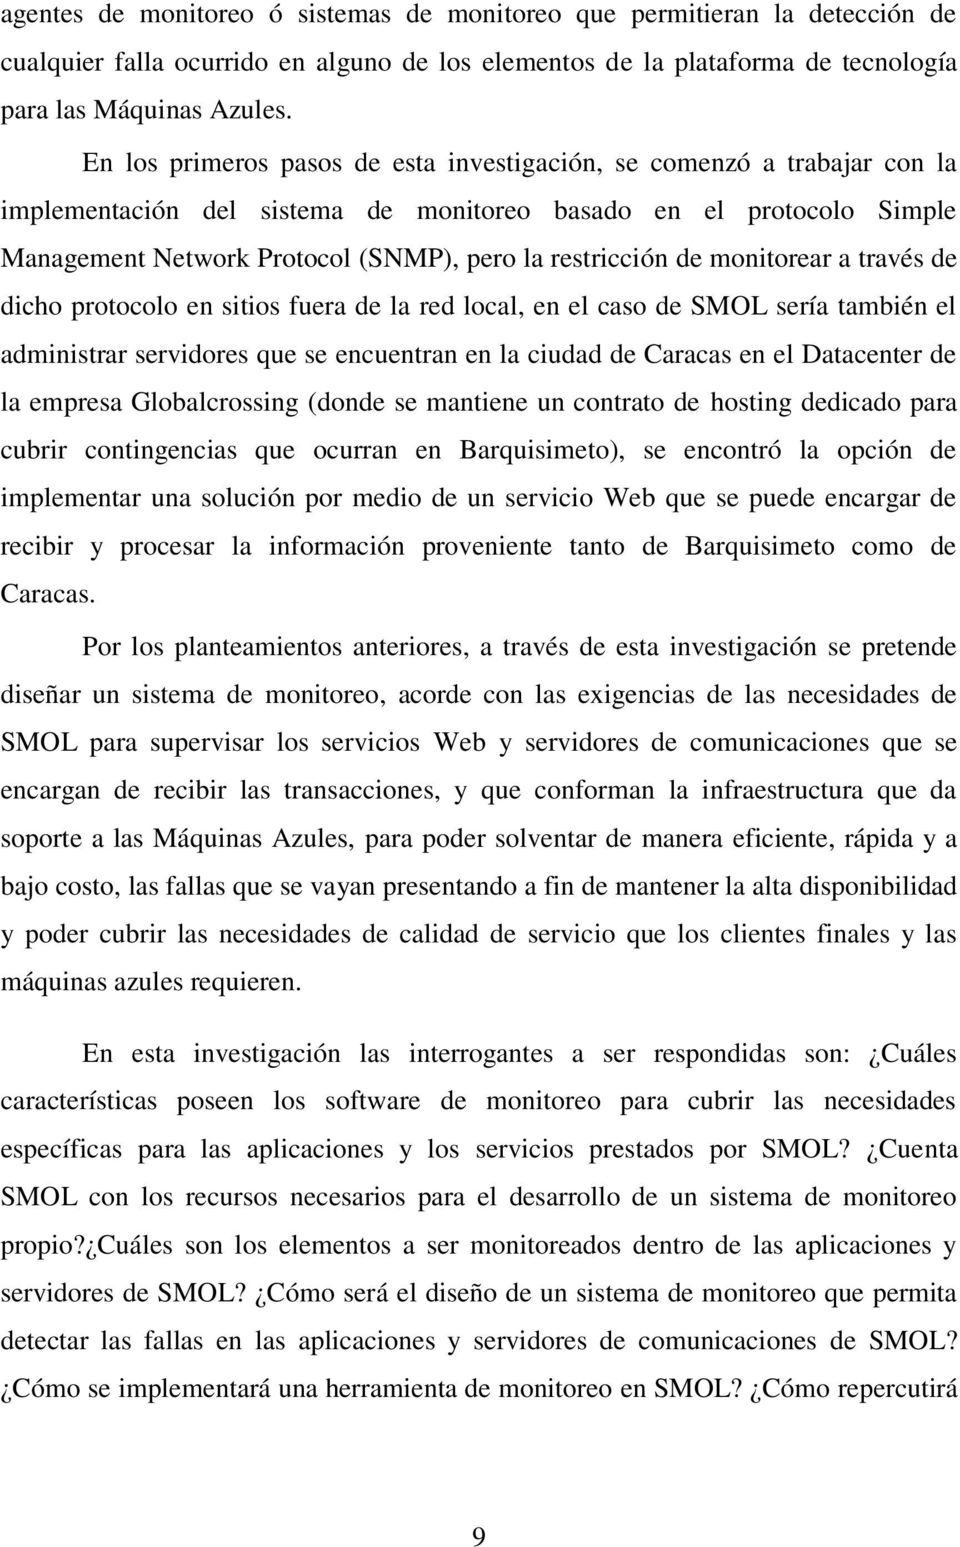 de monitorear a través de dicho protocolo en sitios fuera de la red local, en el caso de SMOL sería también el administrar servidores que se encuentran en la ciudad de Caracas en el Datacenter de la